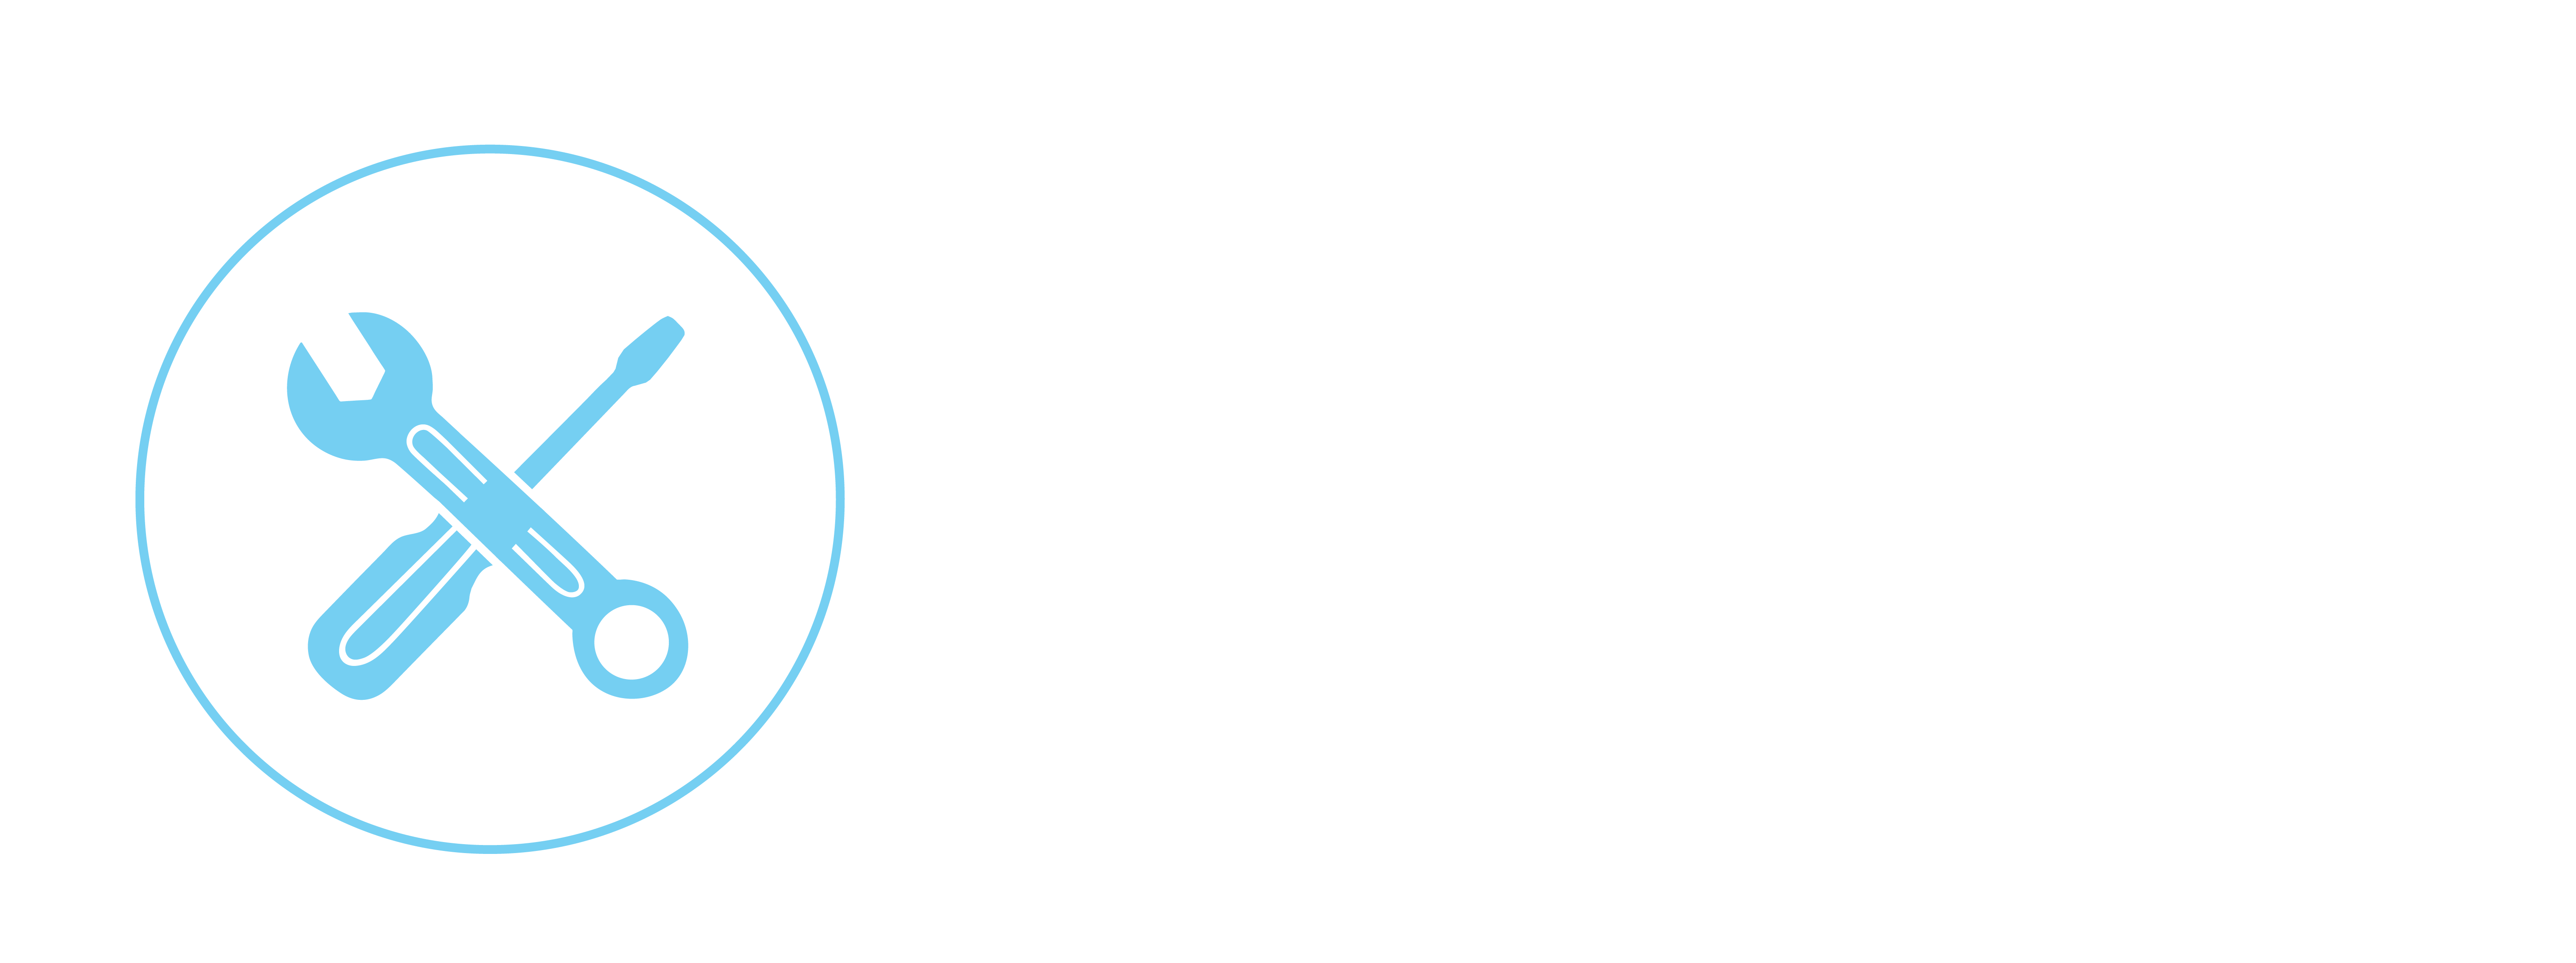 Tertiary logo white